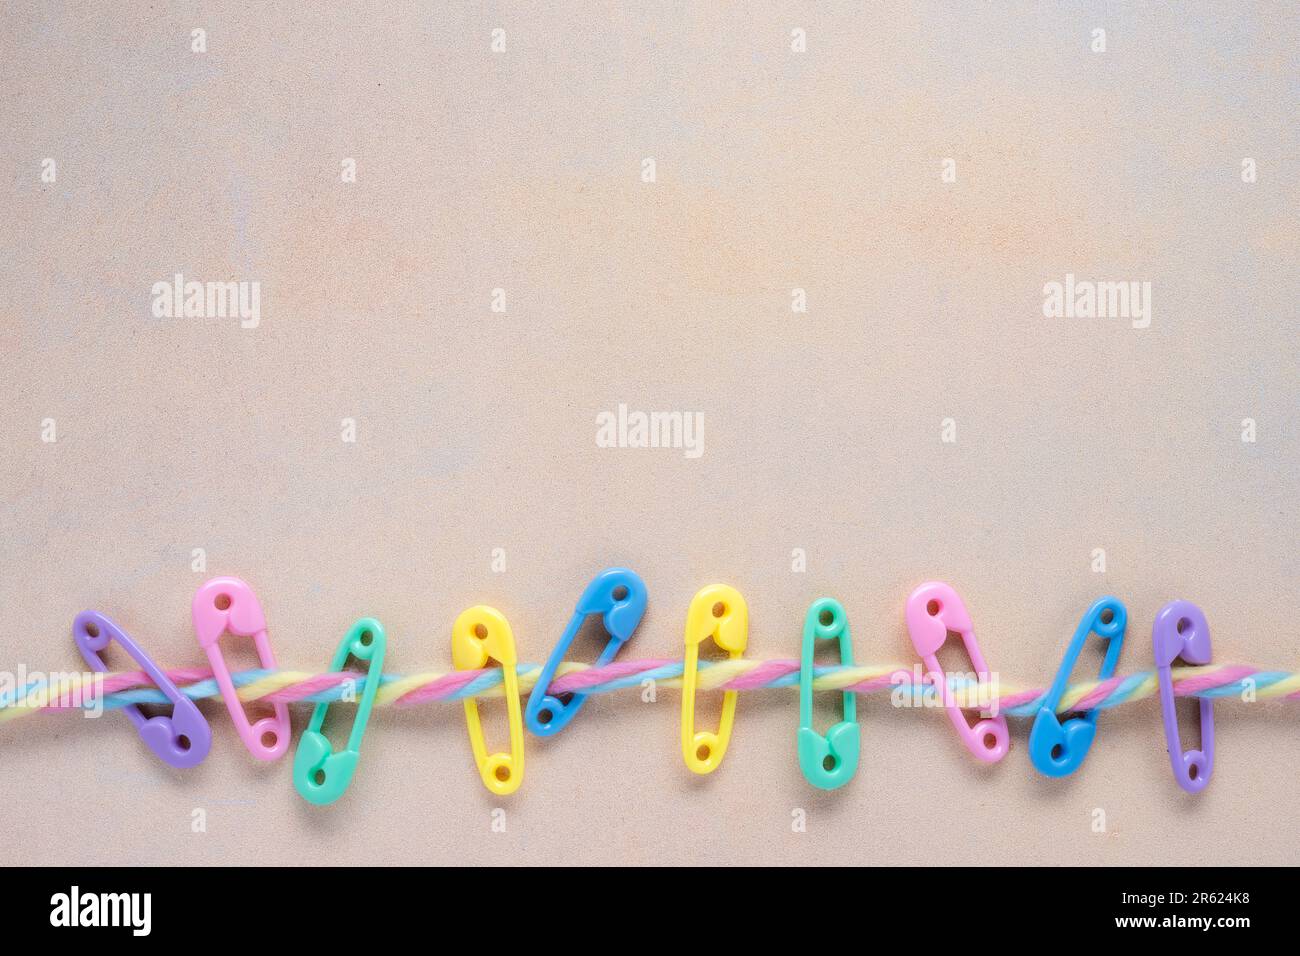 Farbenfrohes Babykonzept mit hellen Plastikwindeln auf einer bunten, flauschigen Garnlinie mit fleckigem gelben Hintergrund Stockfoto